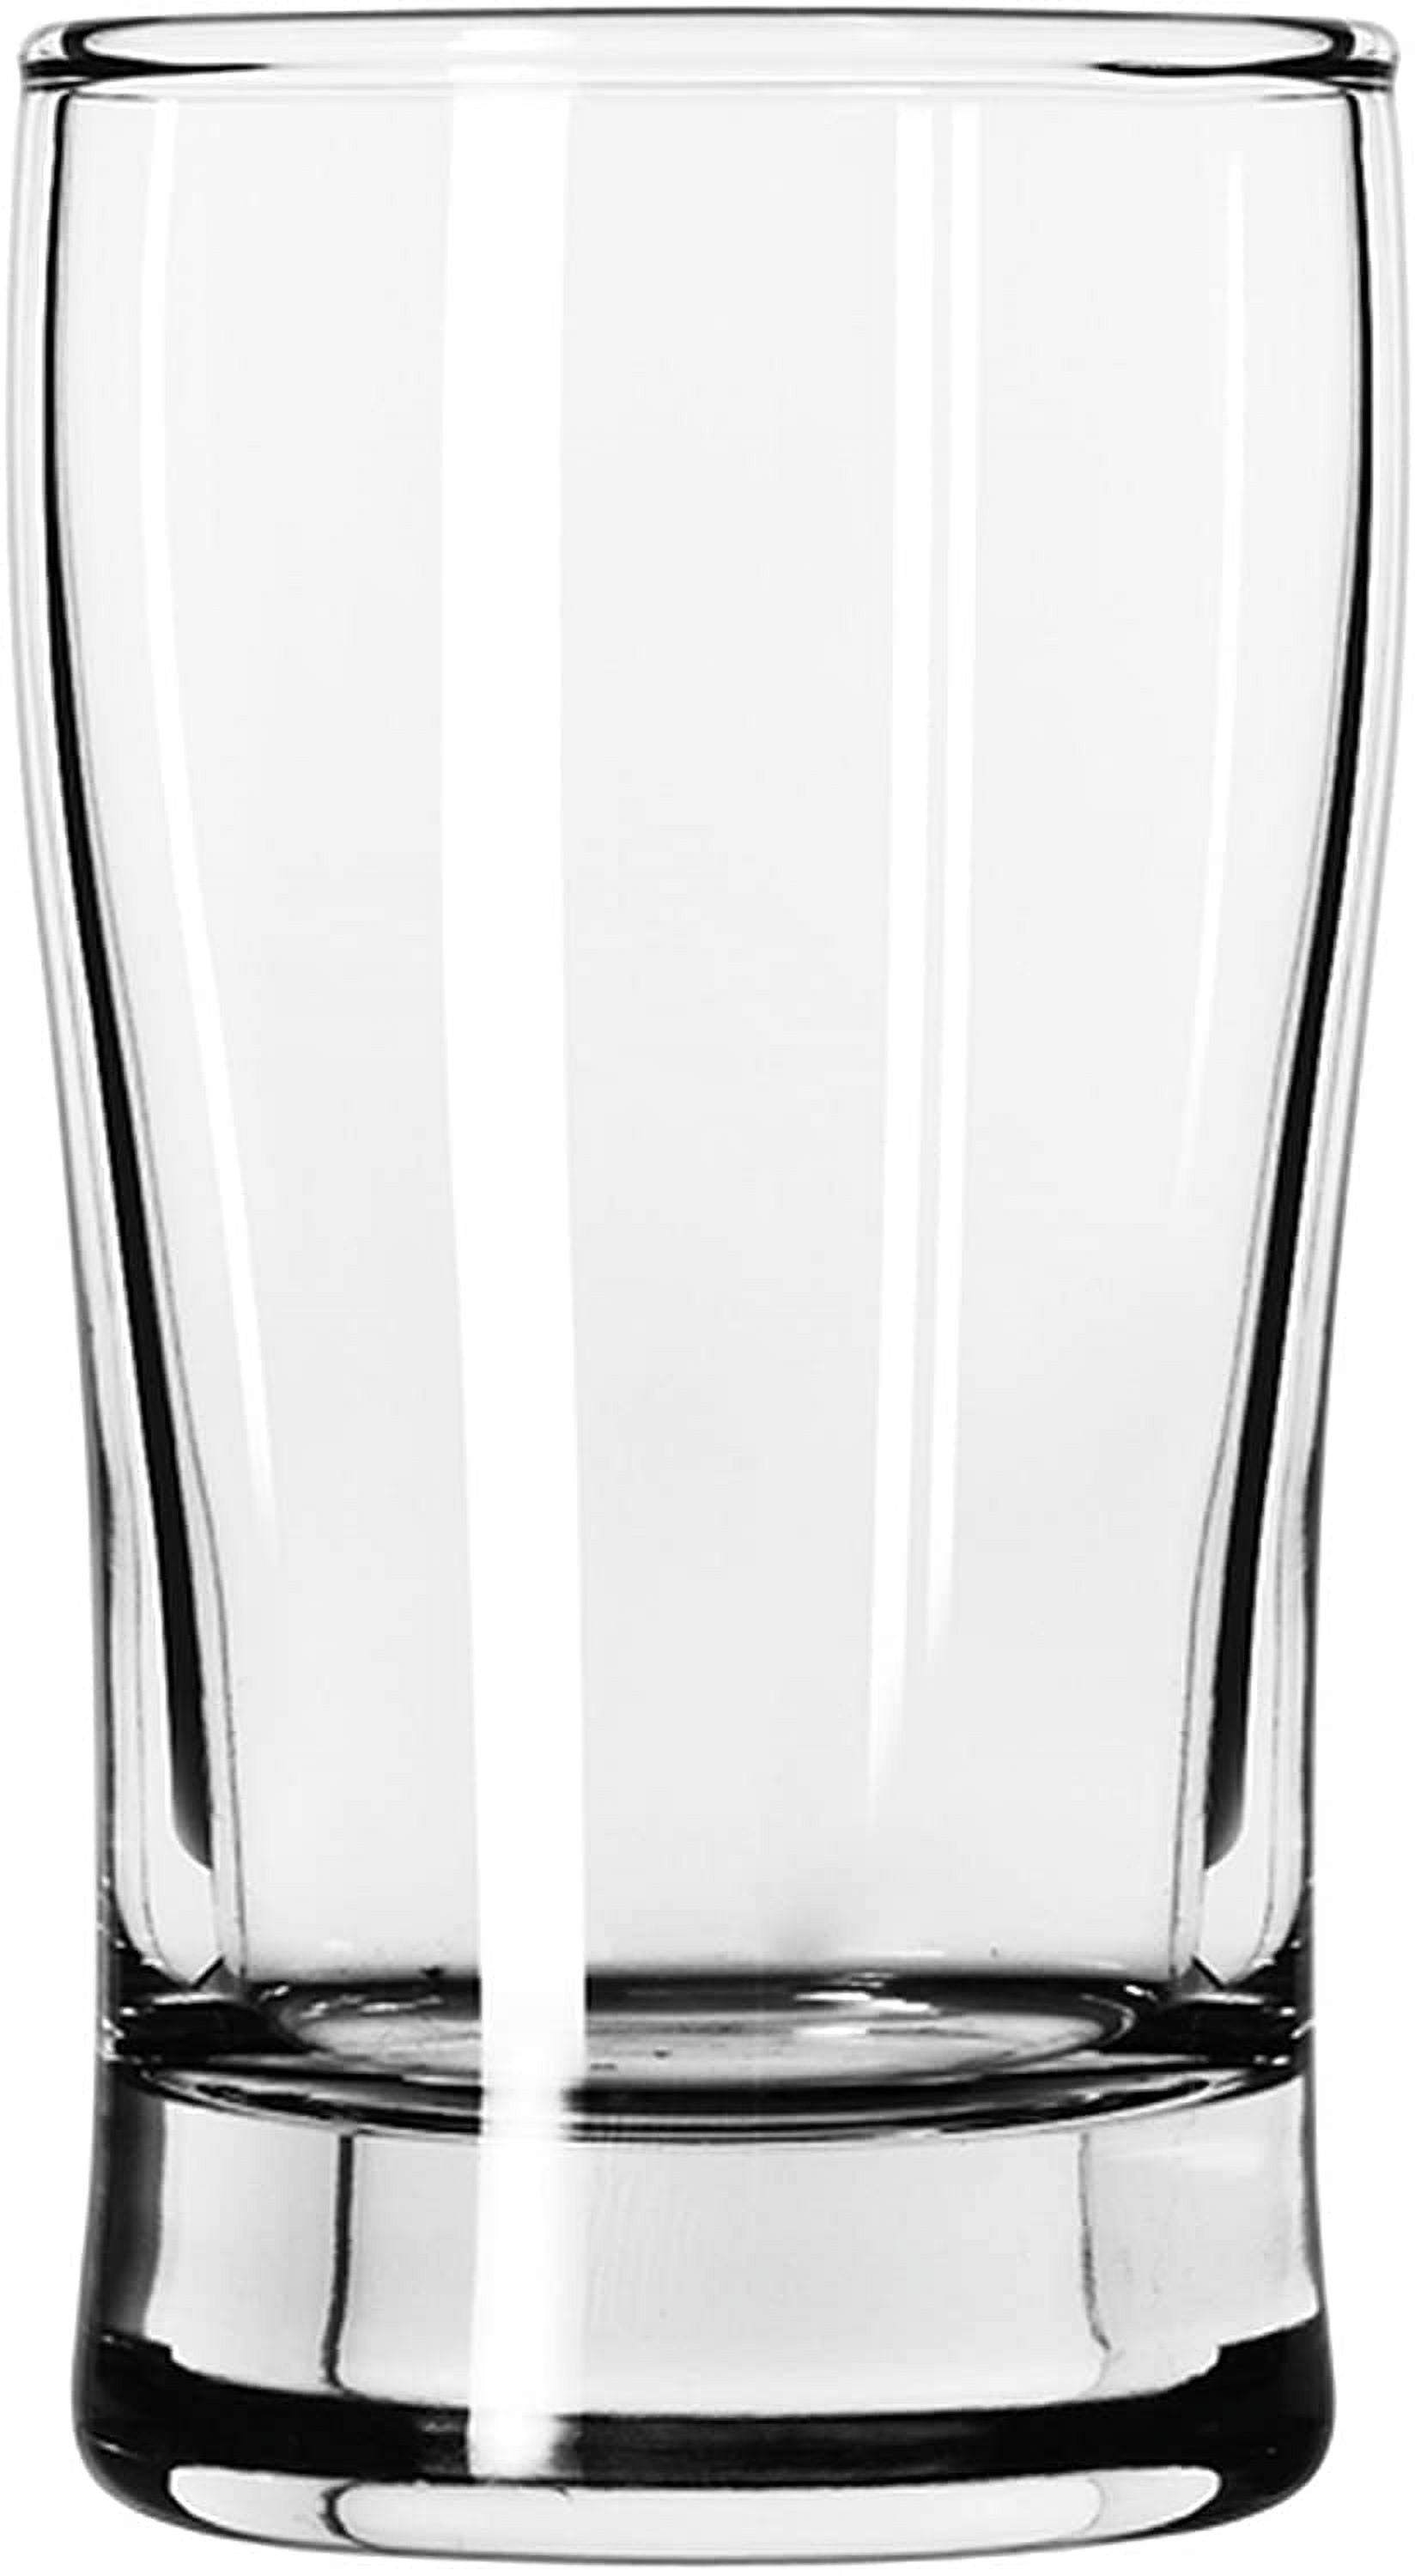 Libbey 249 5oz Side Water Glass